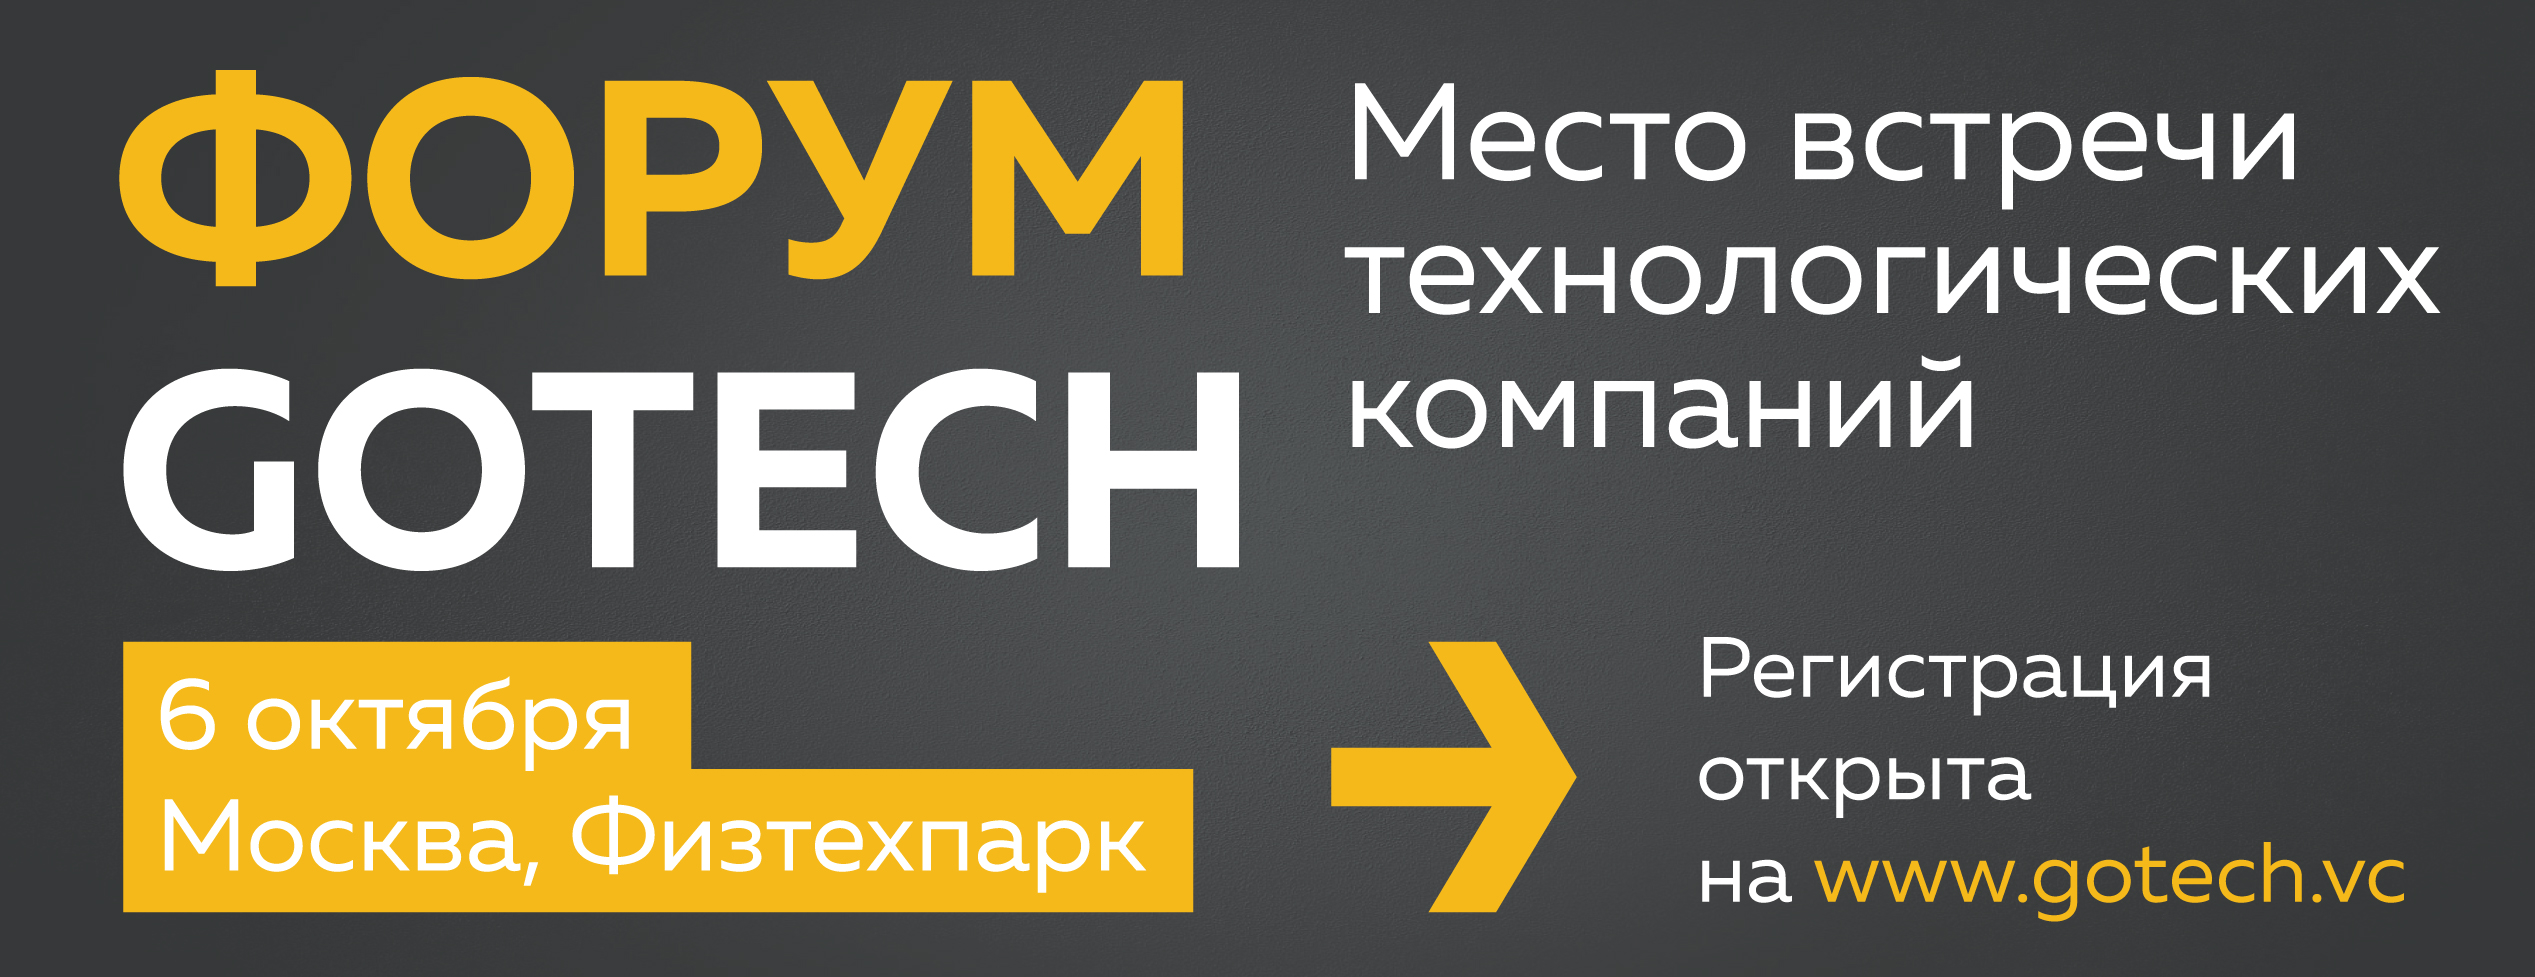 Форум GoTech 6 октября – место встречи технологических компаний. Регистрация открыта!